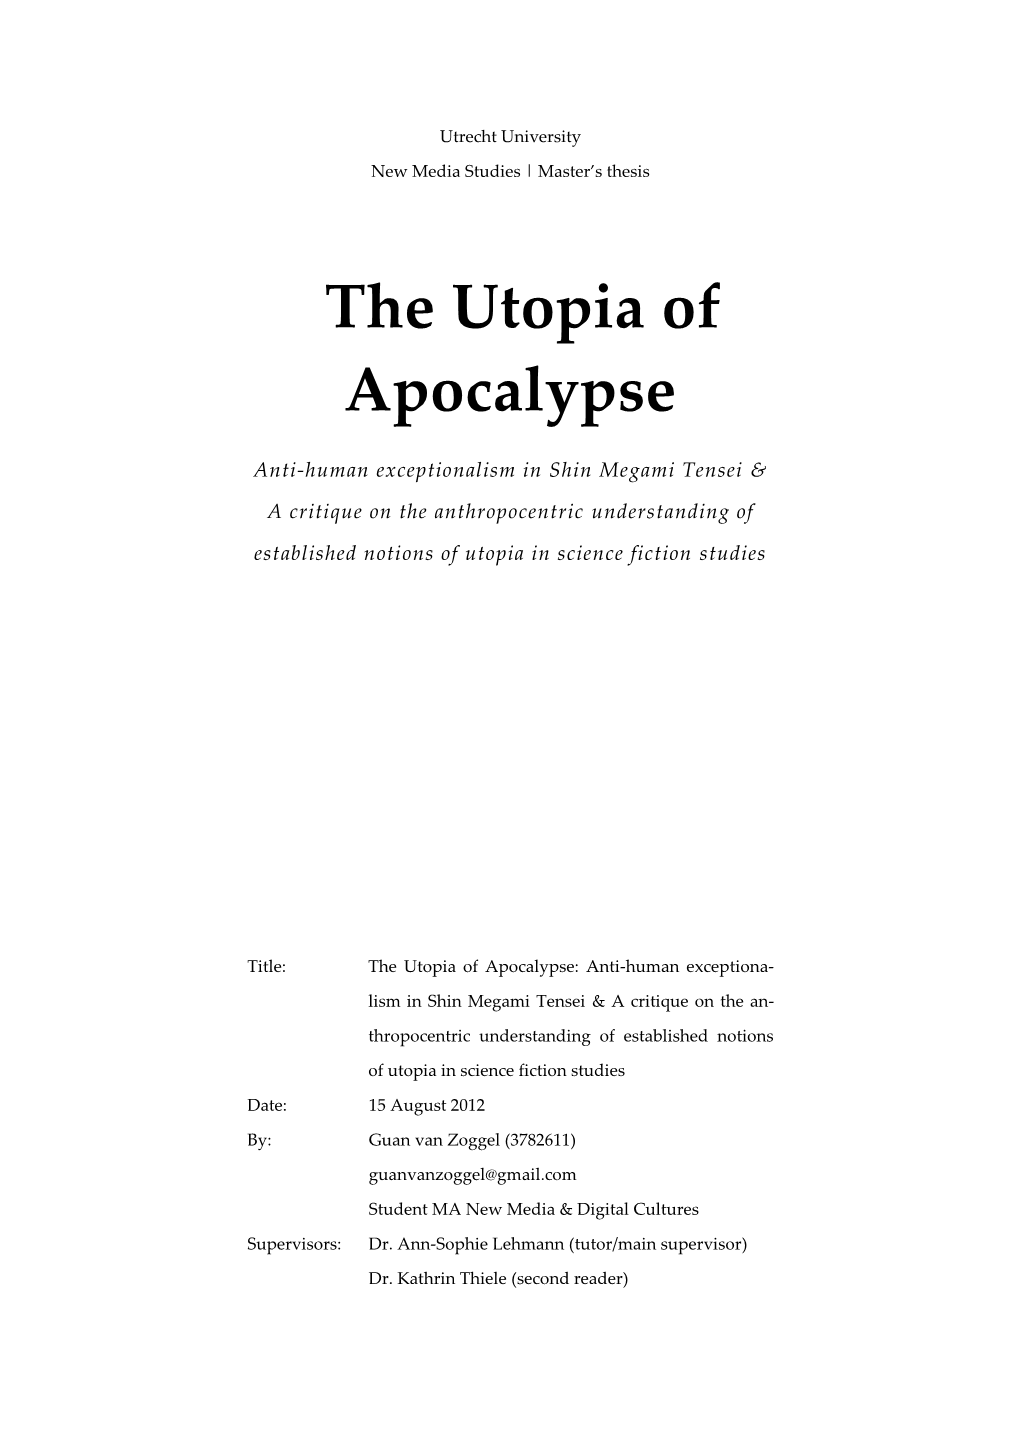 The Utopia of Apocalypse